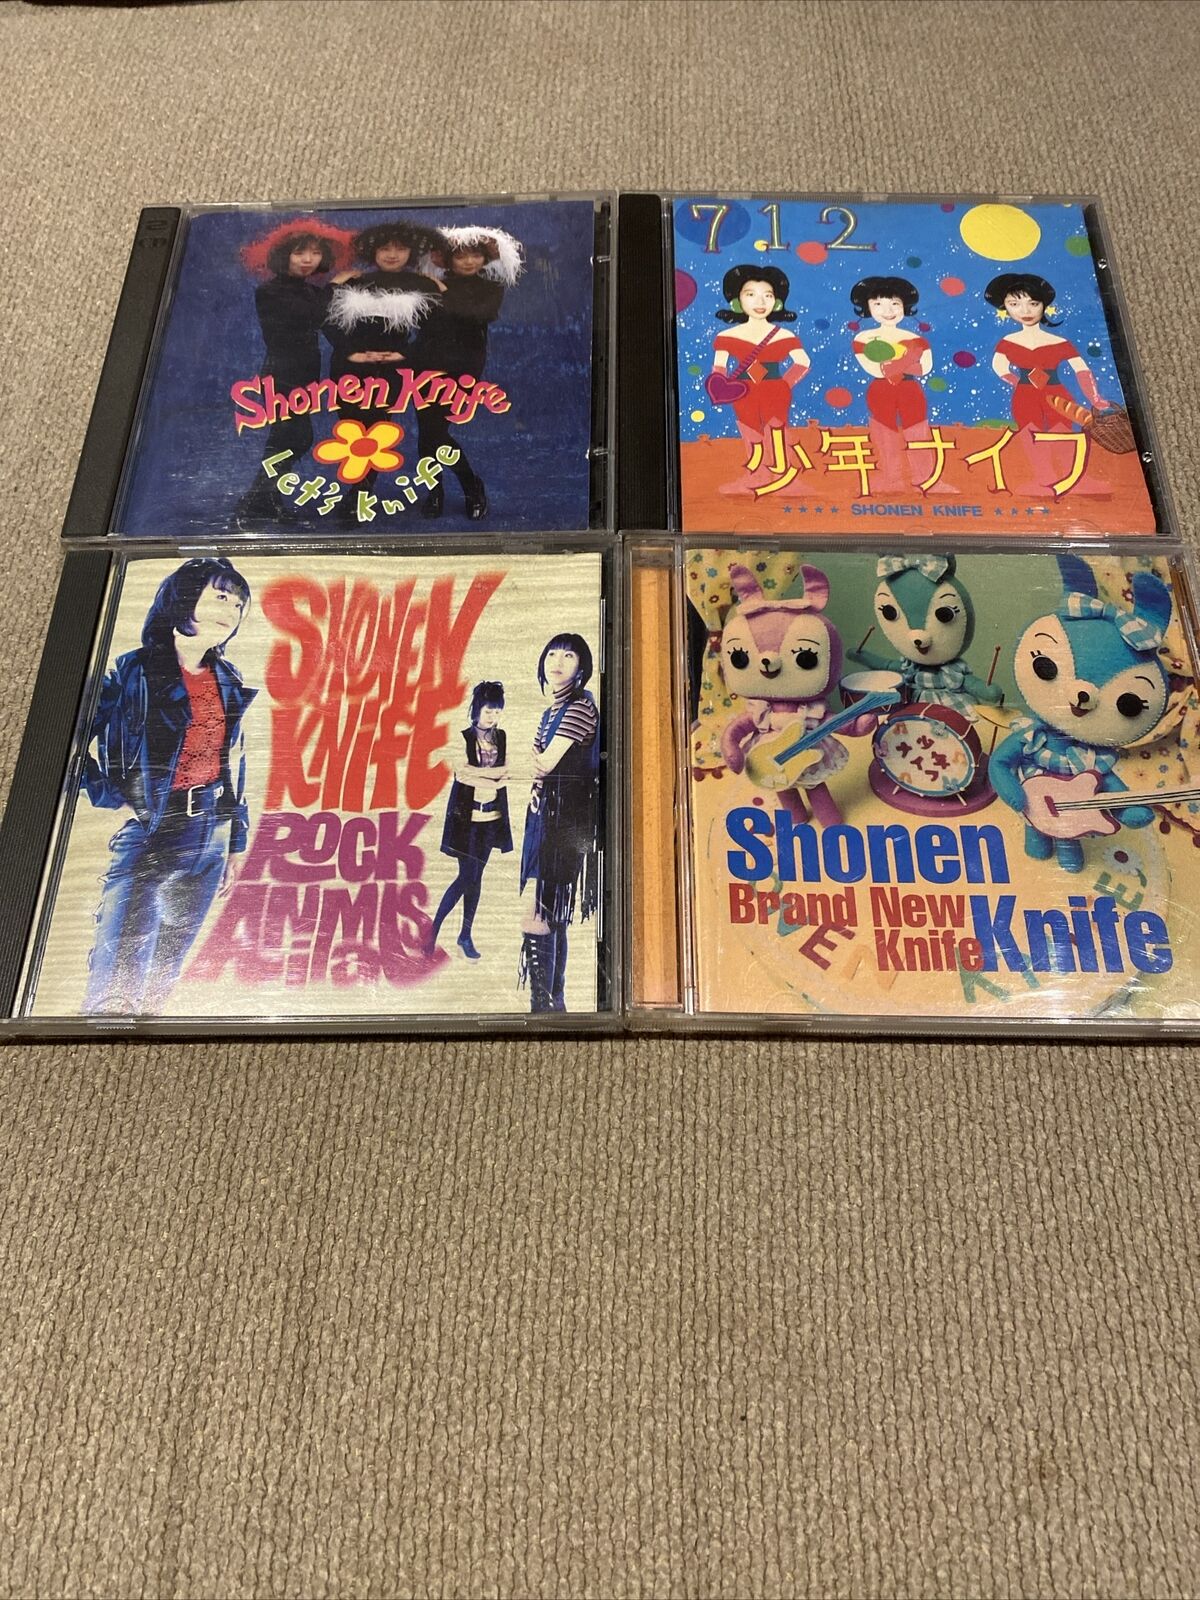 4-Pack “Shonen Knife” CDs. Pre-owned.